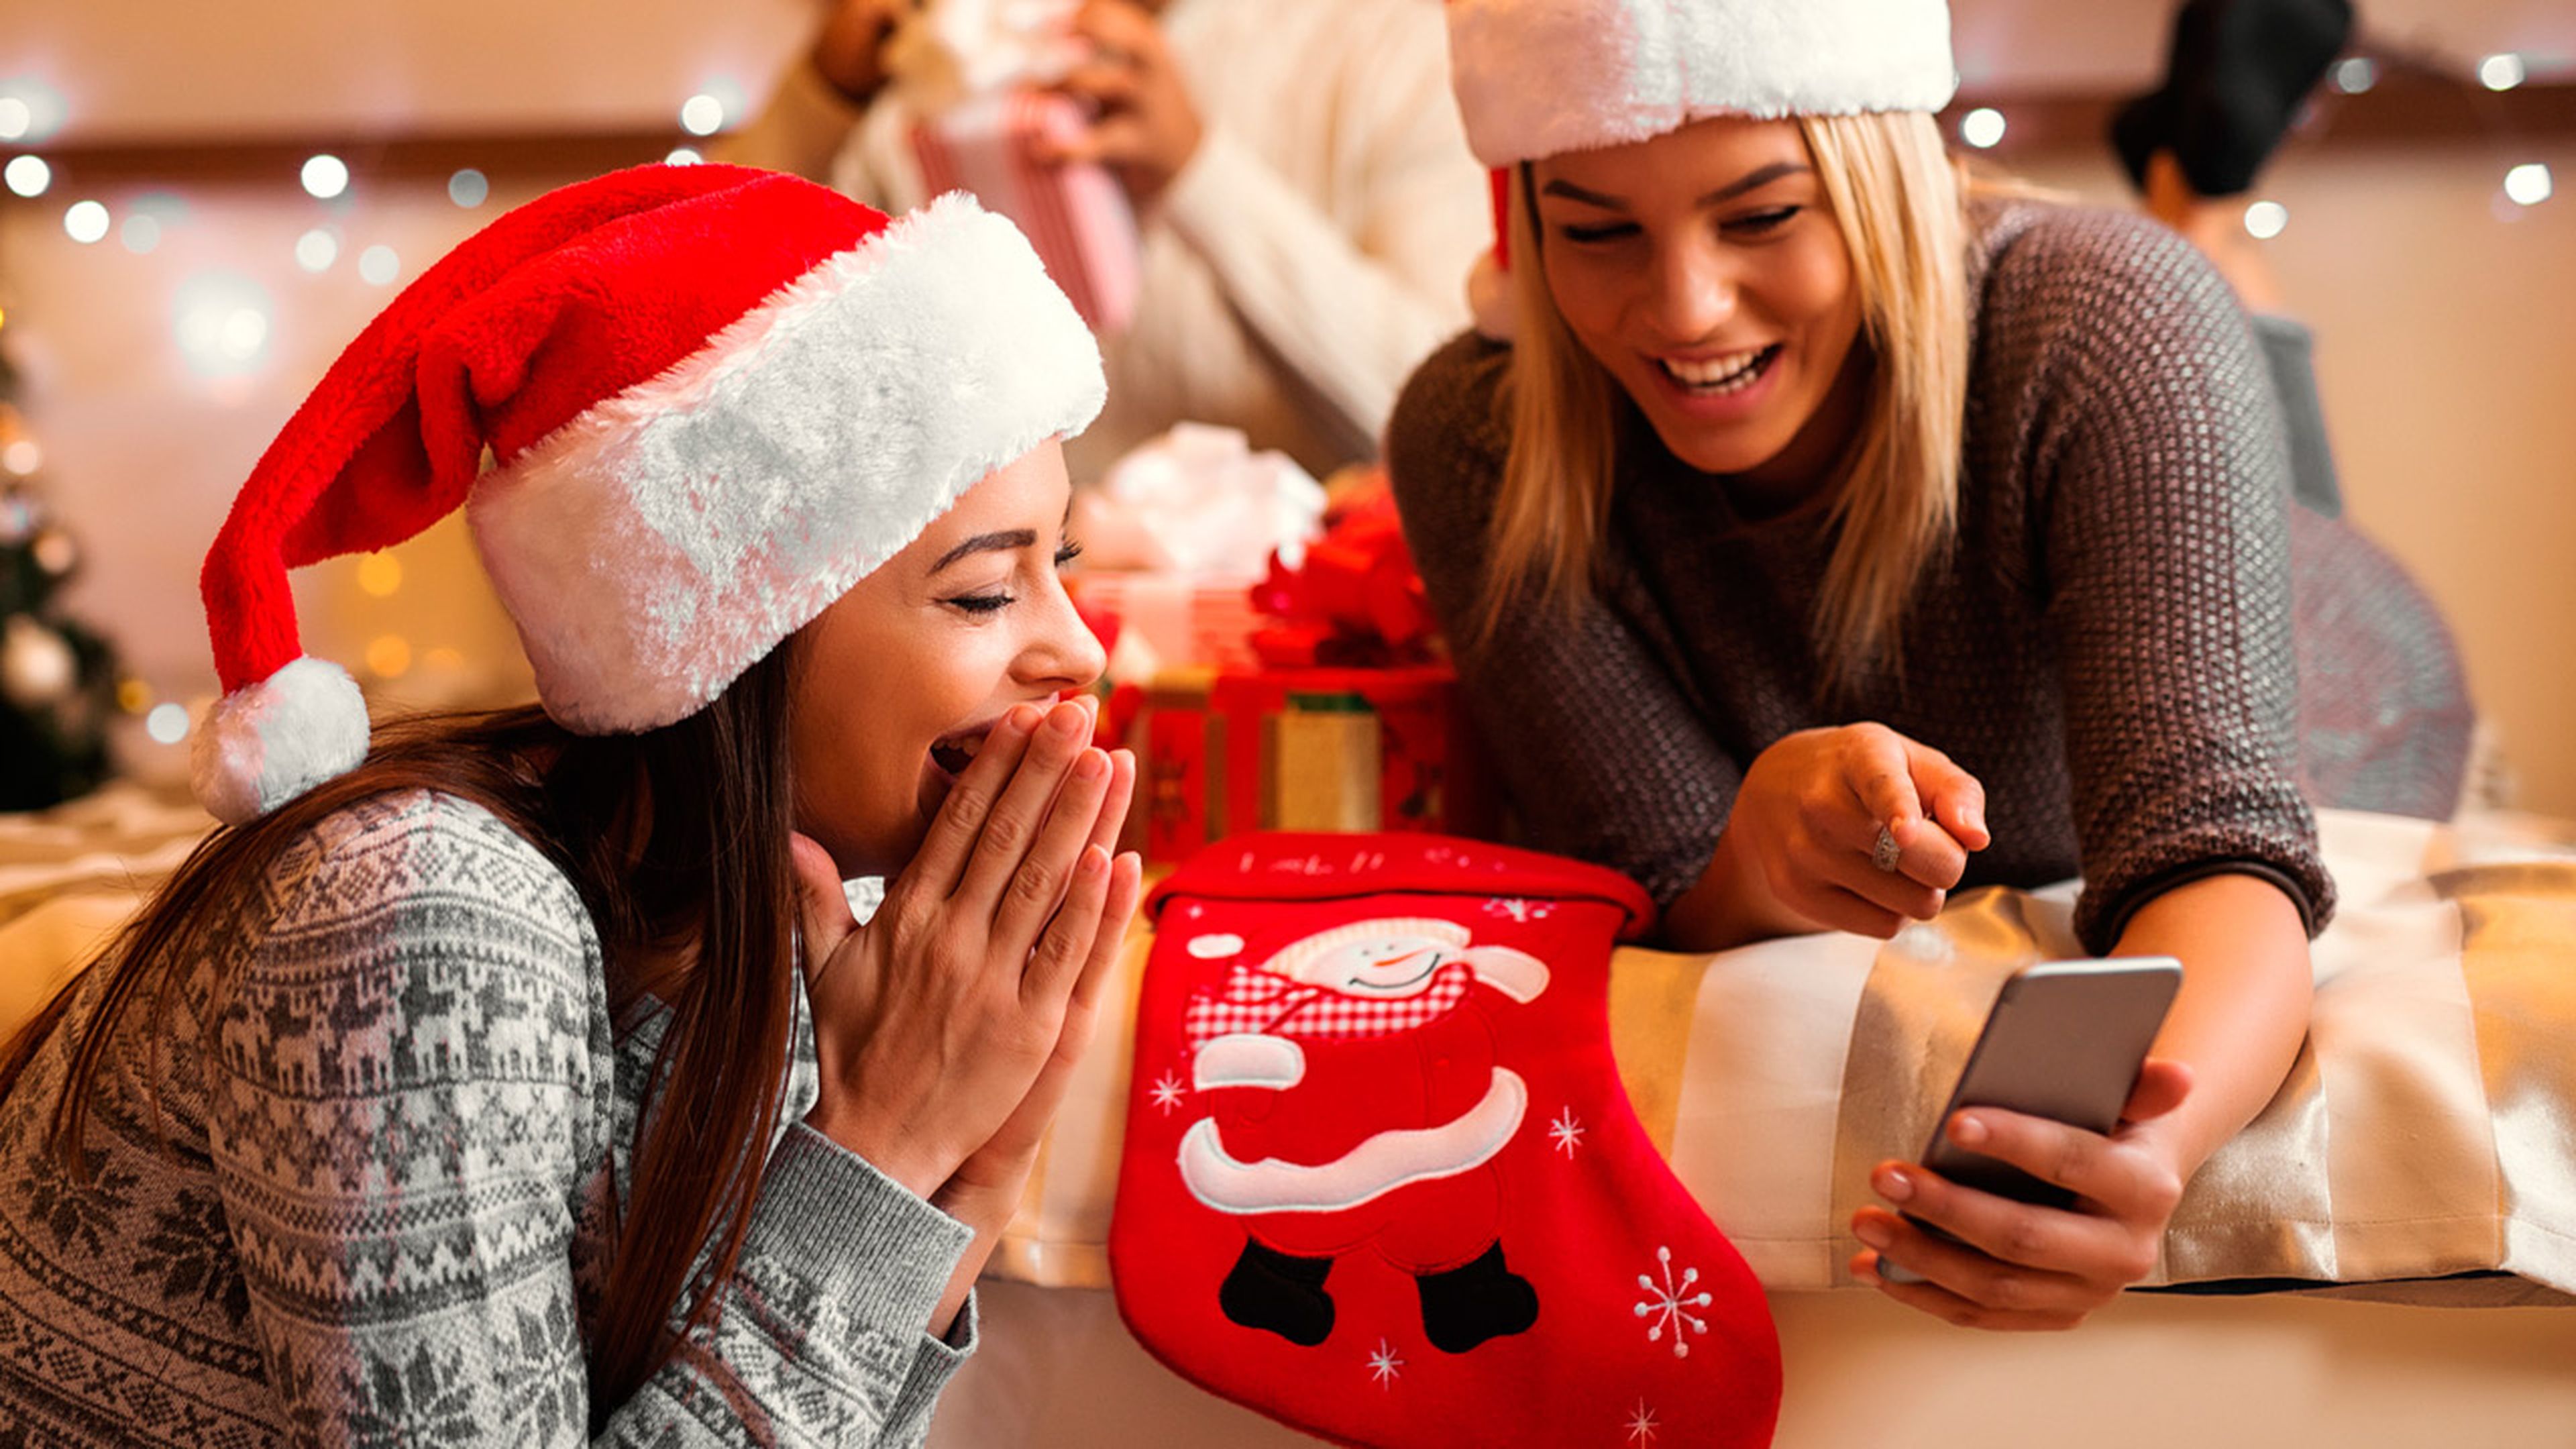 Mensajes divertidos y frases para felicitar la Navidad 2018 por WhatsApp